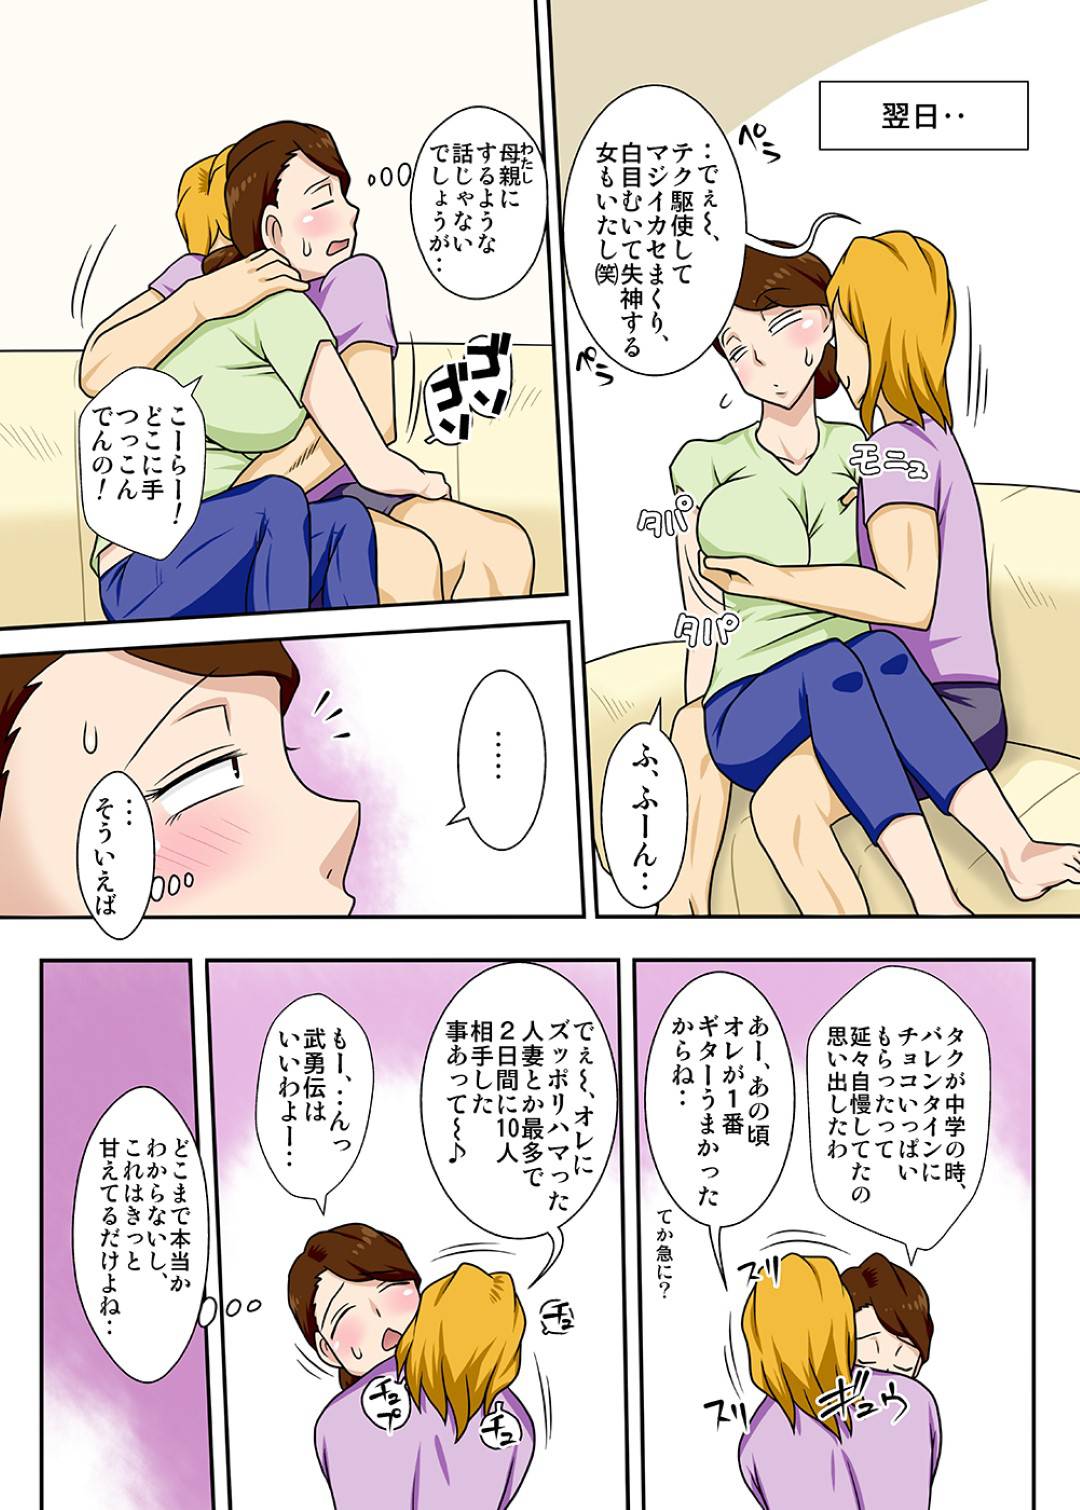 【エロ漫画】母は東京からニートになって戻ってきた息子と近親相姦セックスをしまくる【フリーハンド魂】